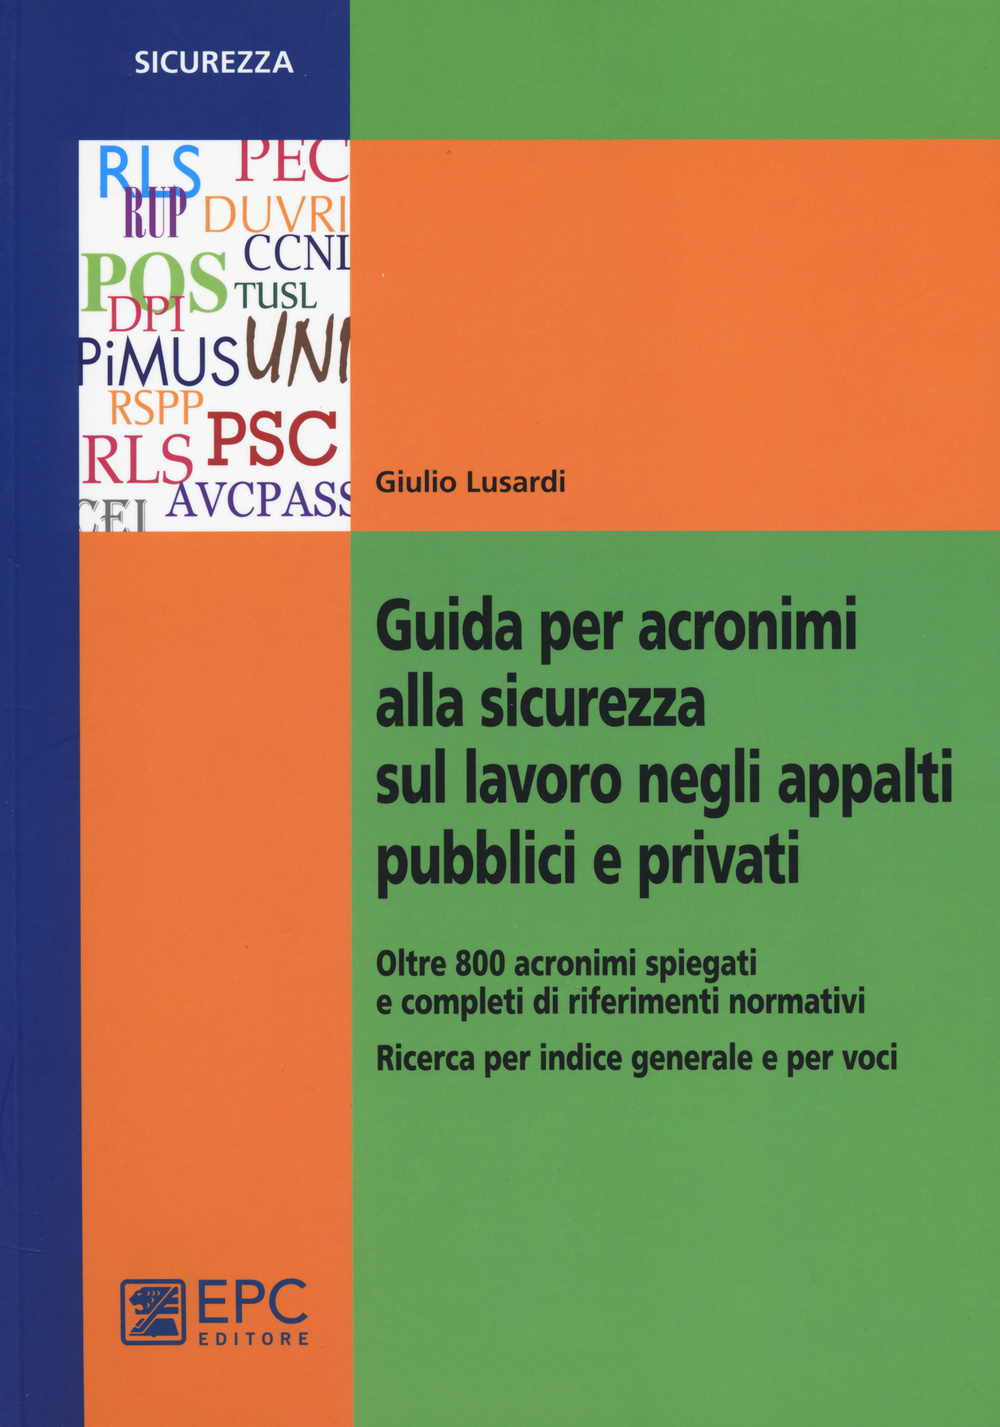 Image of Guida per acronimi alla sicurezza sul lavoro negli appalti pubblici e privati